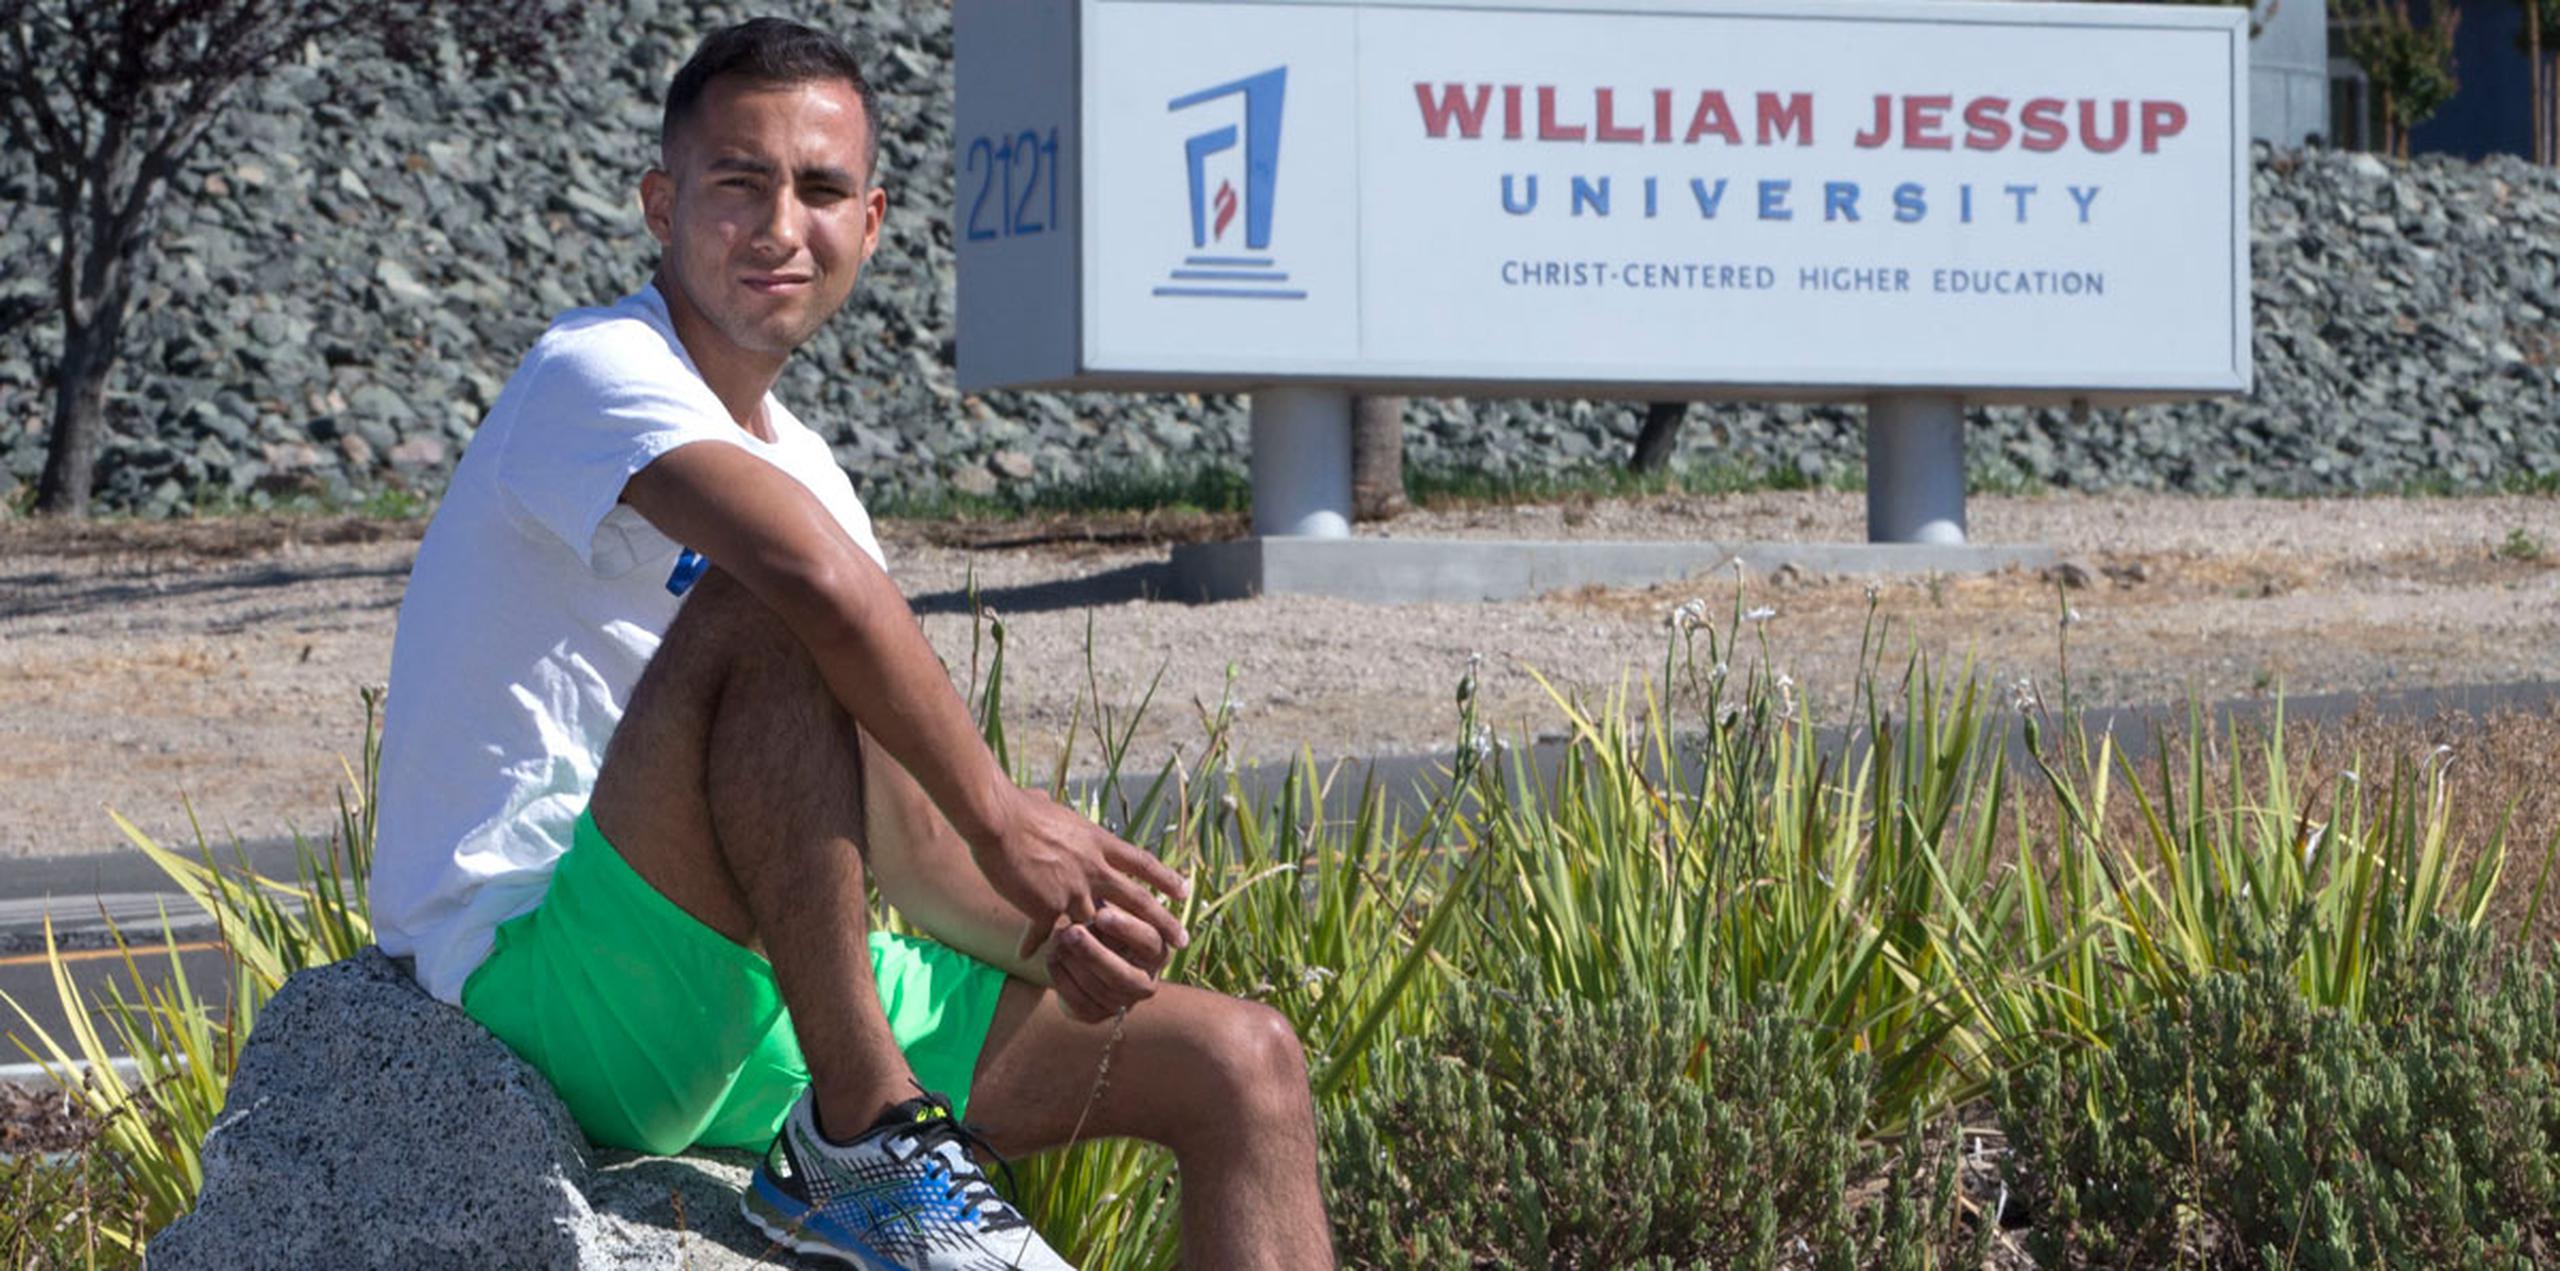 Anthony Villarreal fue un miembro del equipo de pista y campo de William Jessup University hasta que -según él - lo expulsaron por ser homosexual. (AP)